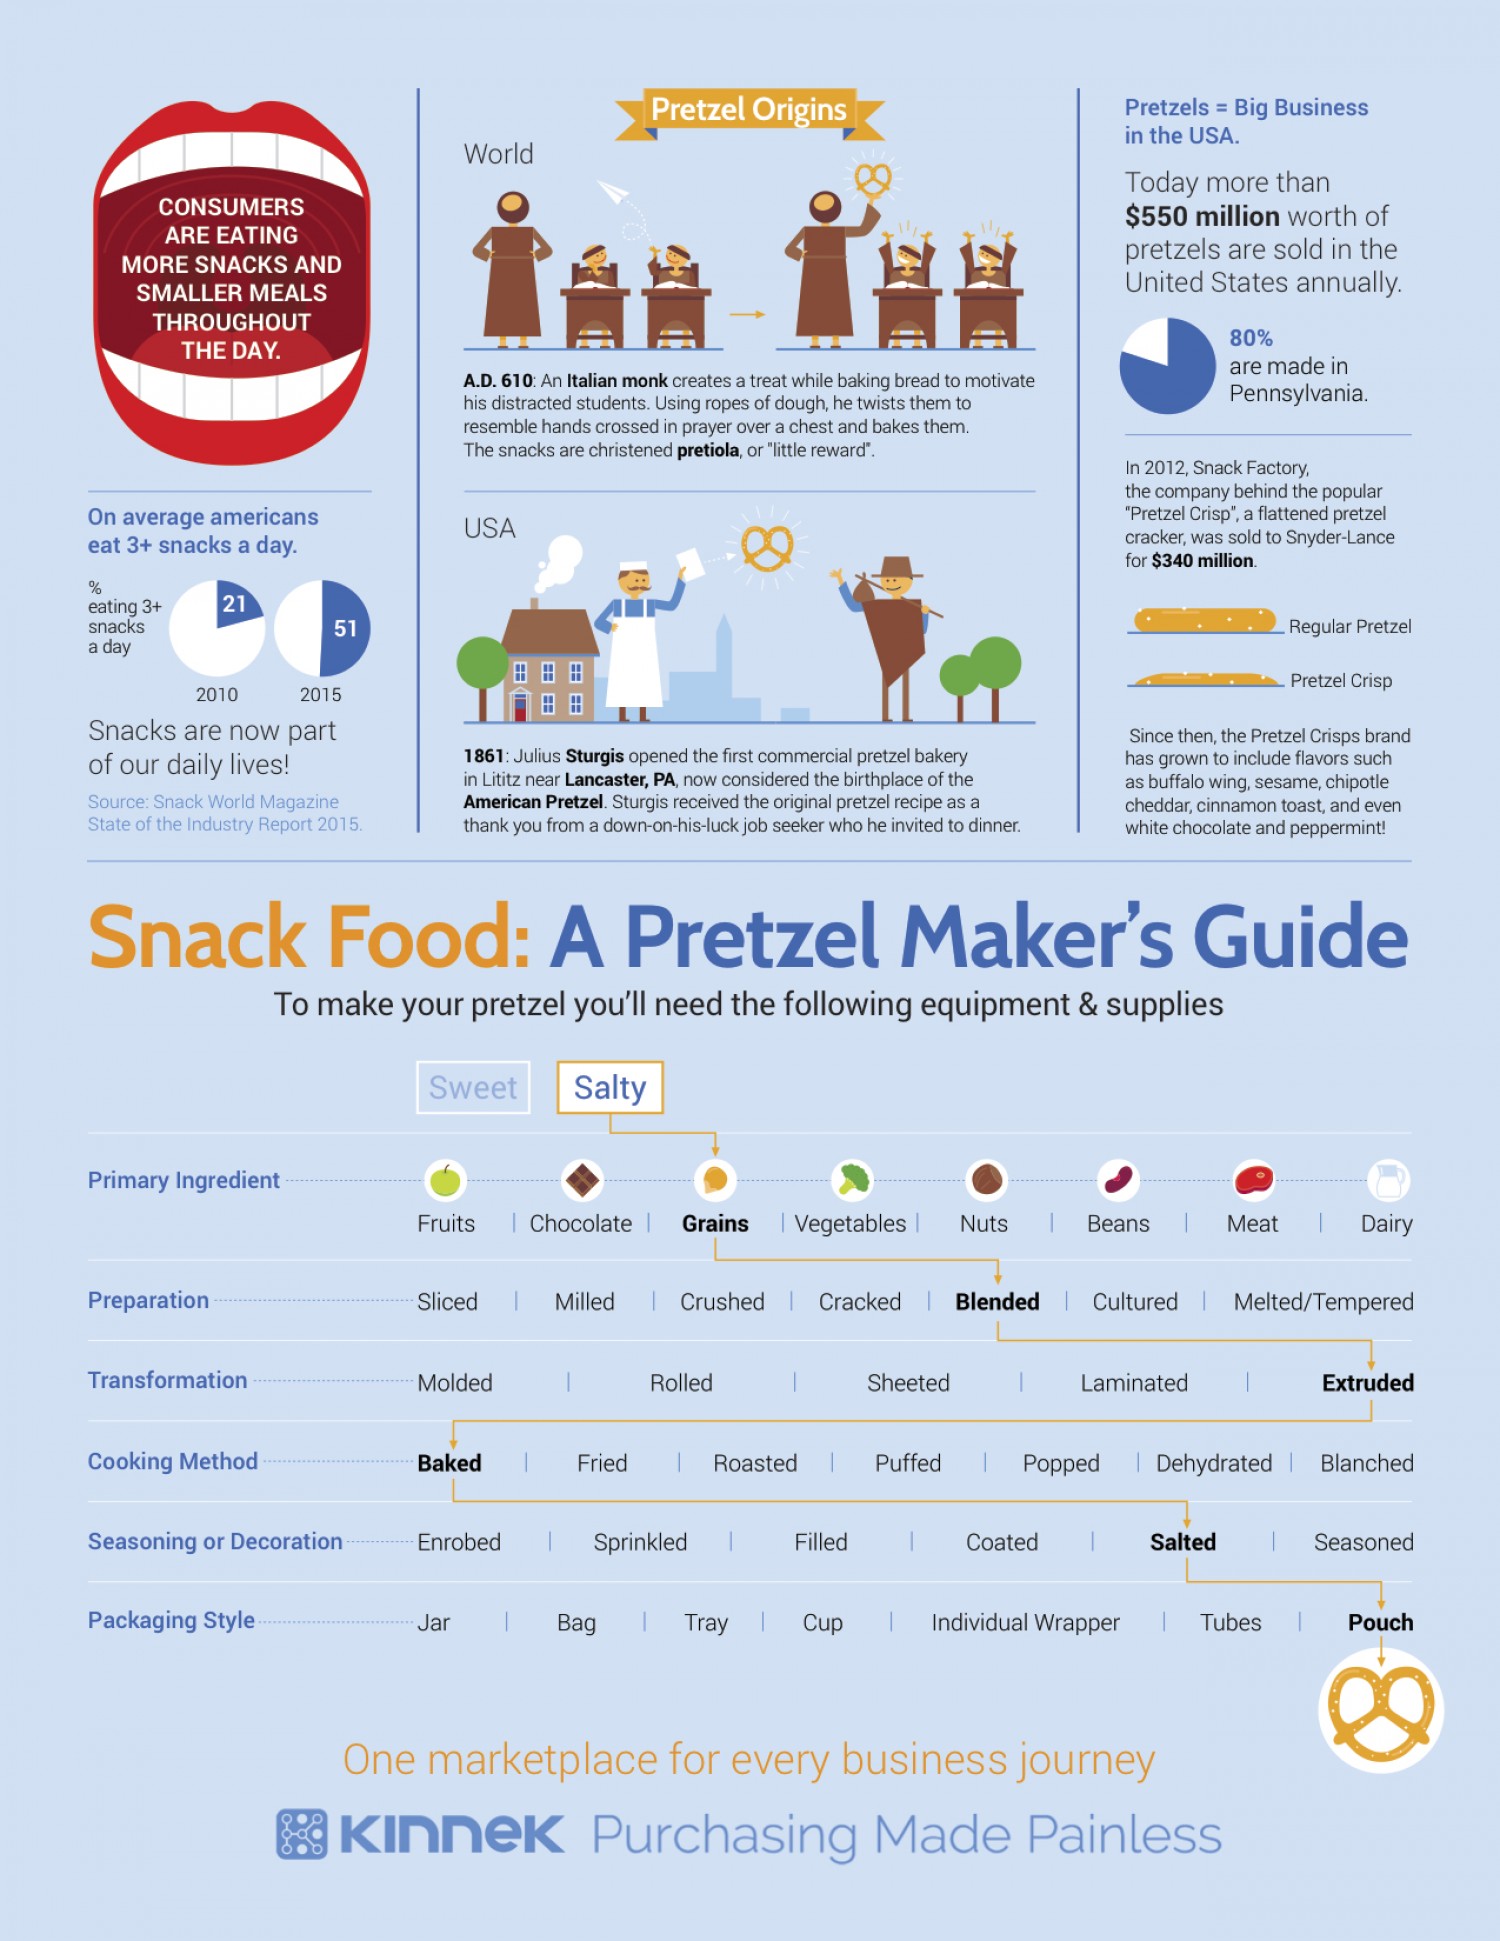 Snack Food: A Pretzel Maker's Guide